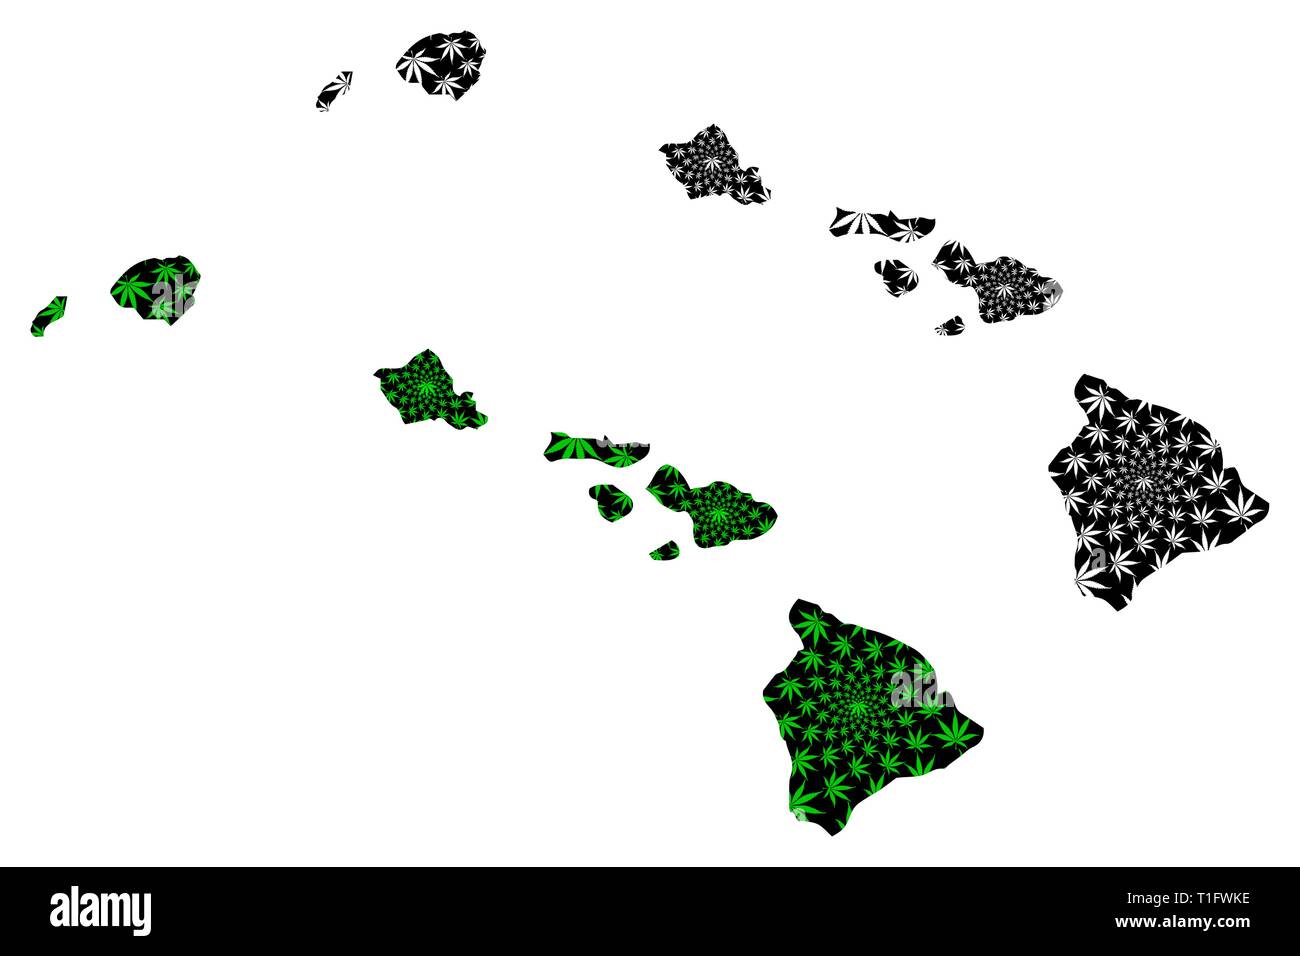 Hawaii (États-Unis d'Amérique, USA, États-Unis, US) - carte feuille de cannabis est vert et noir, État de New York carte de marijuana,E Illustration de Vecteur